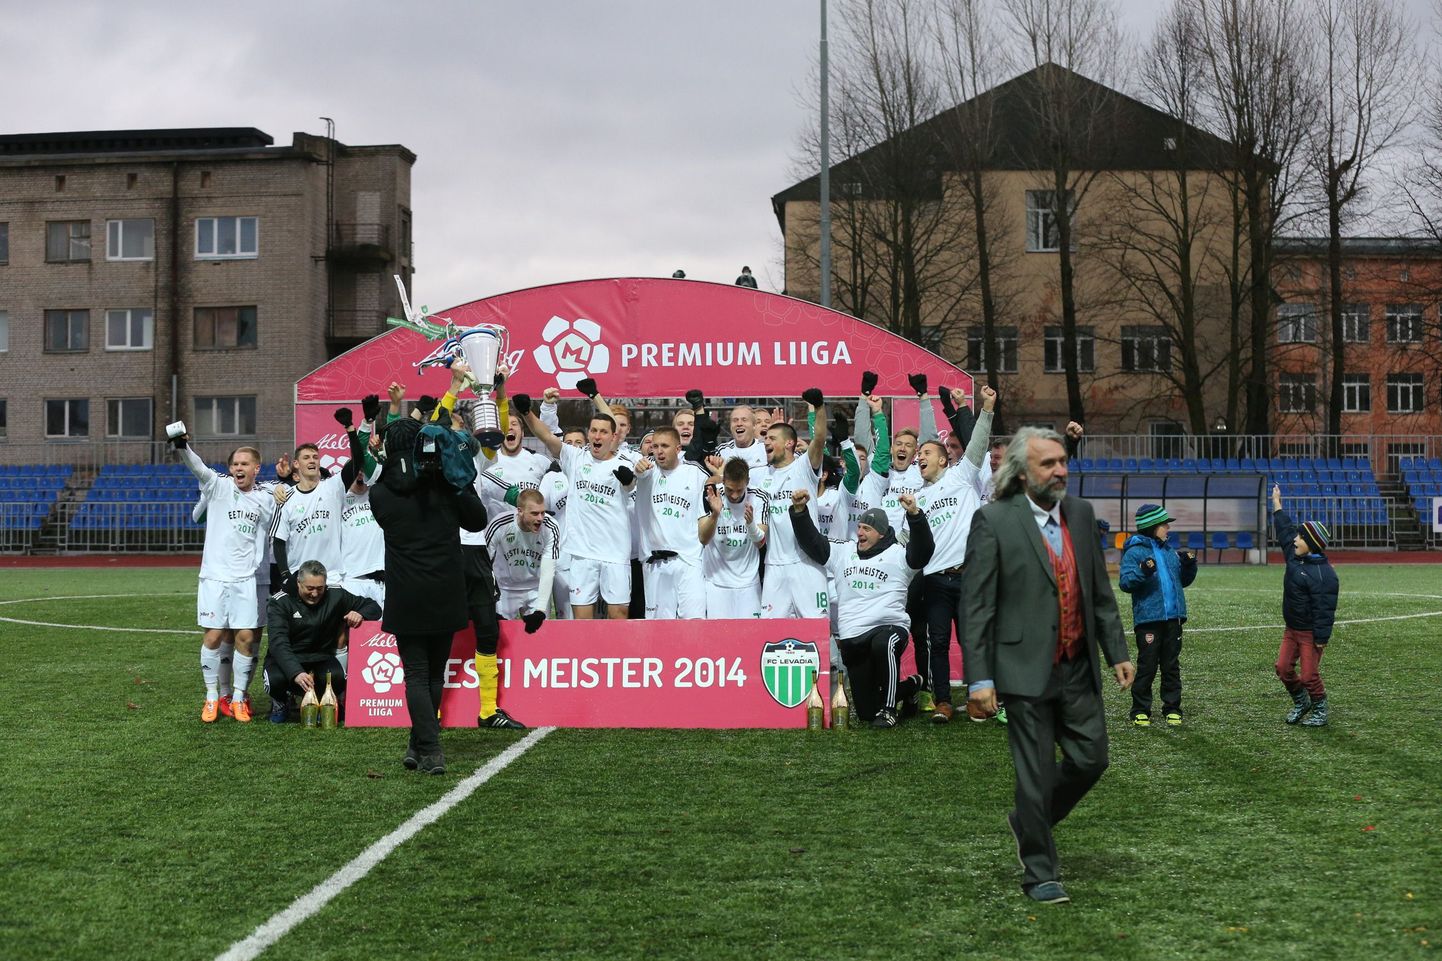 Футболисты "Левадии" отмечают победу в чемпионате Эстонии в 2014 году.